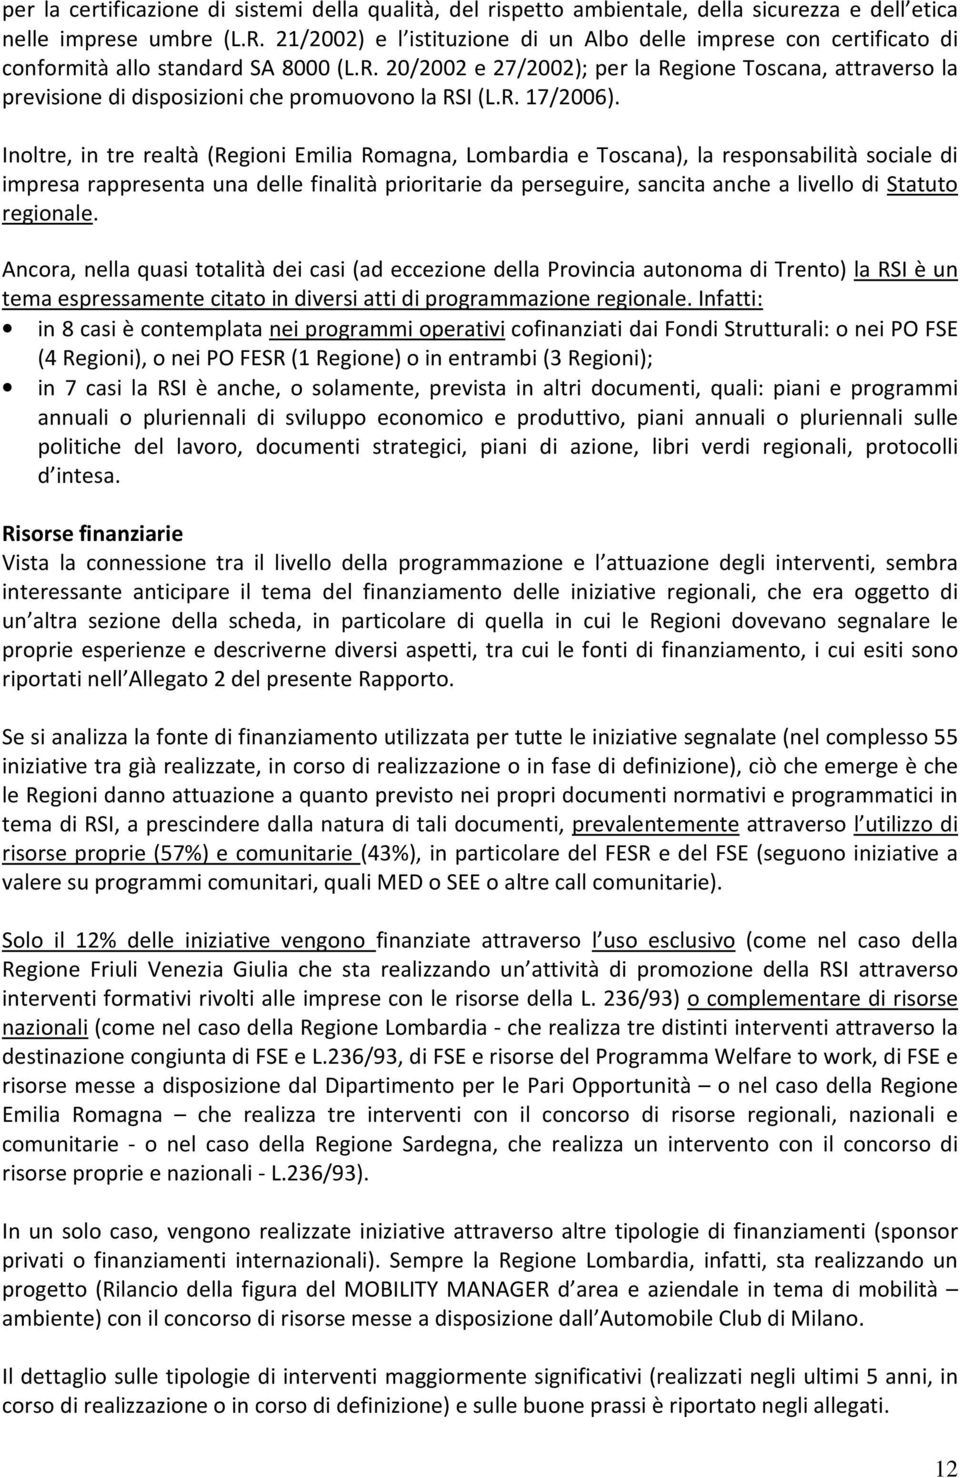 20/2002 e 27/2002); per la Regione Toscana, attraverso la previsione di disposizioni che promuovono la RSI (L.R. 17/2006).